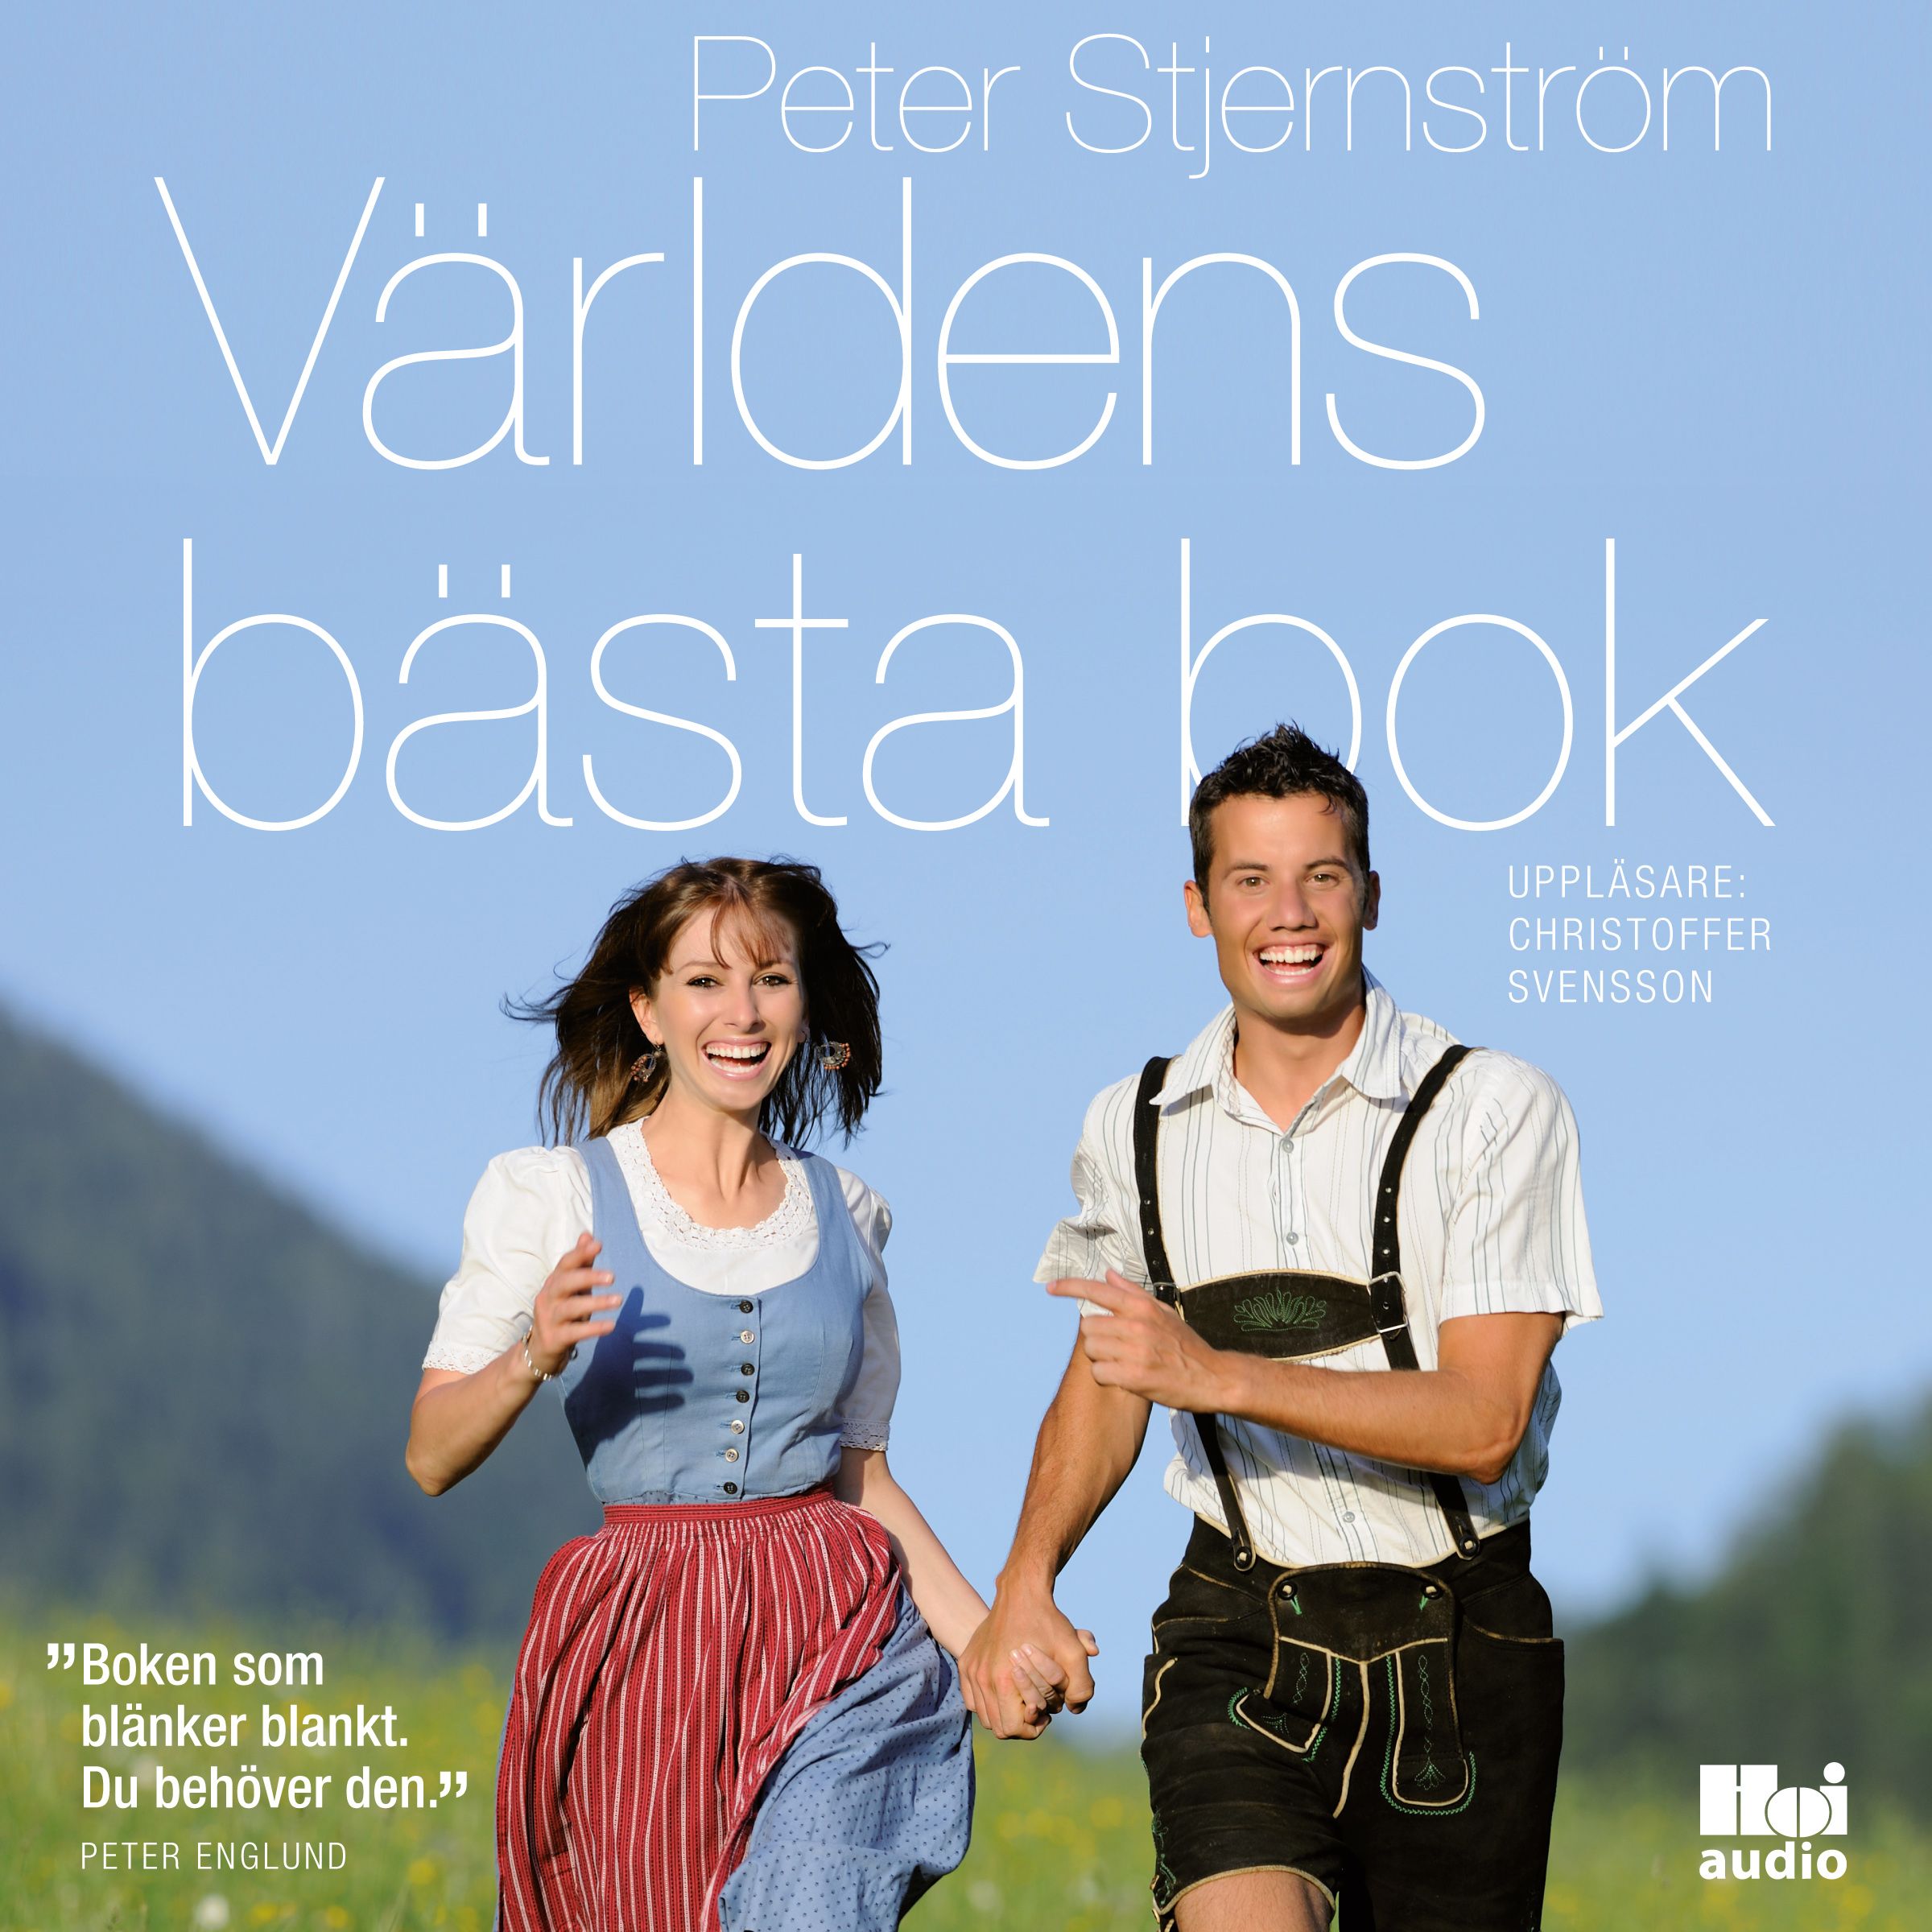 Världens bästa bok, ljudbok av Peter Stjernström